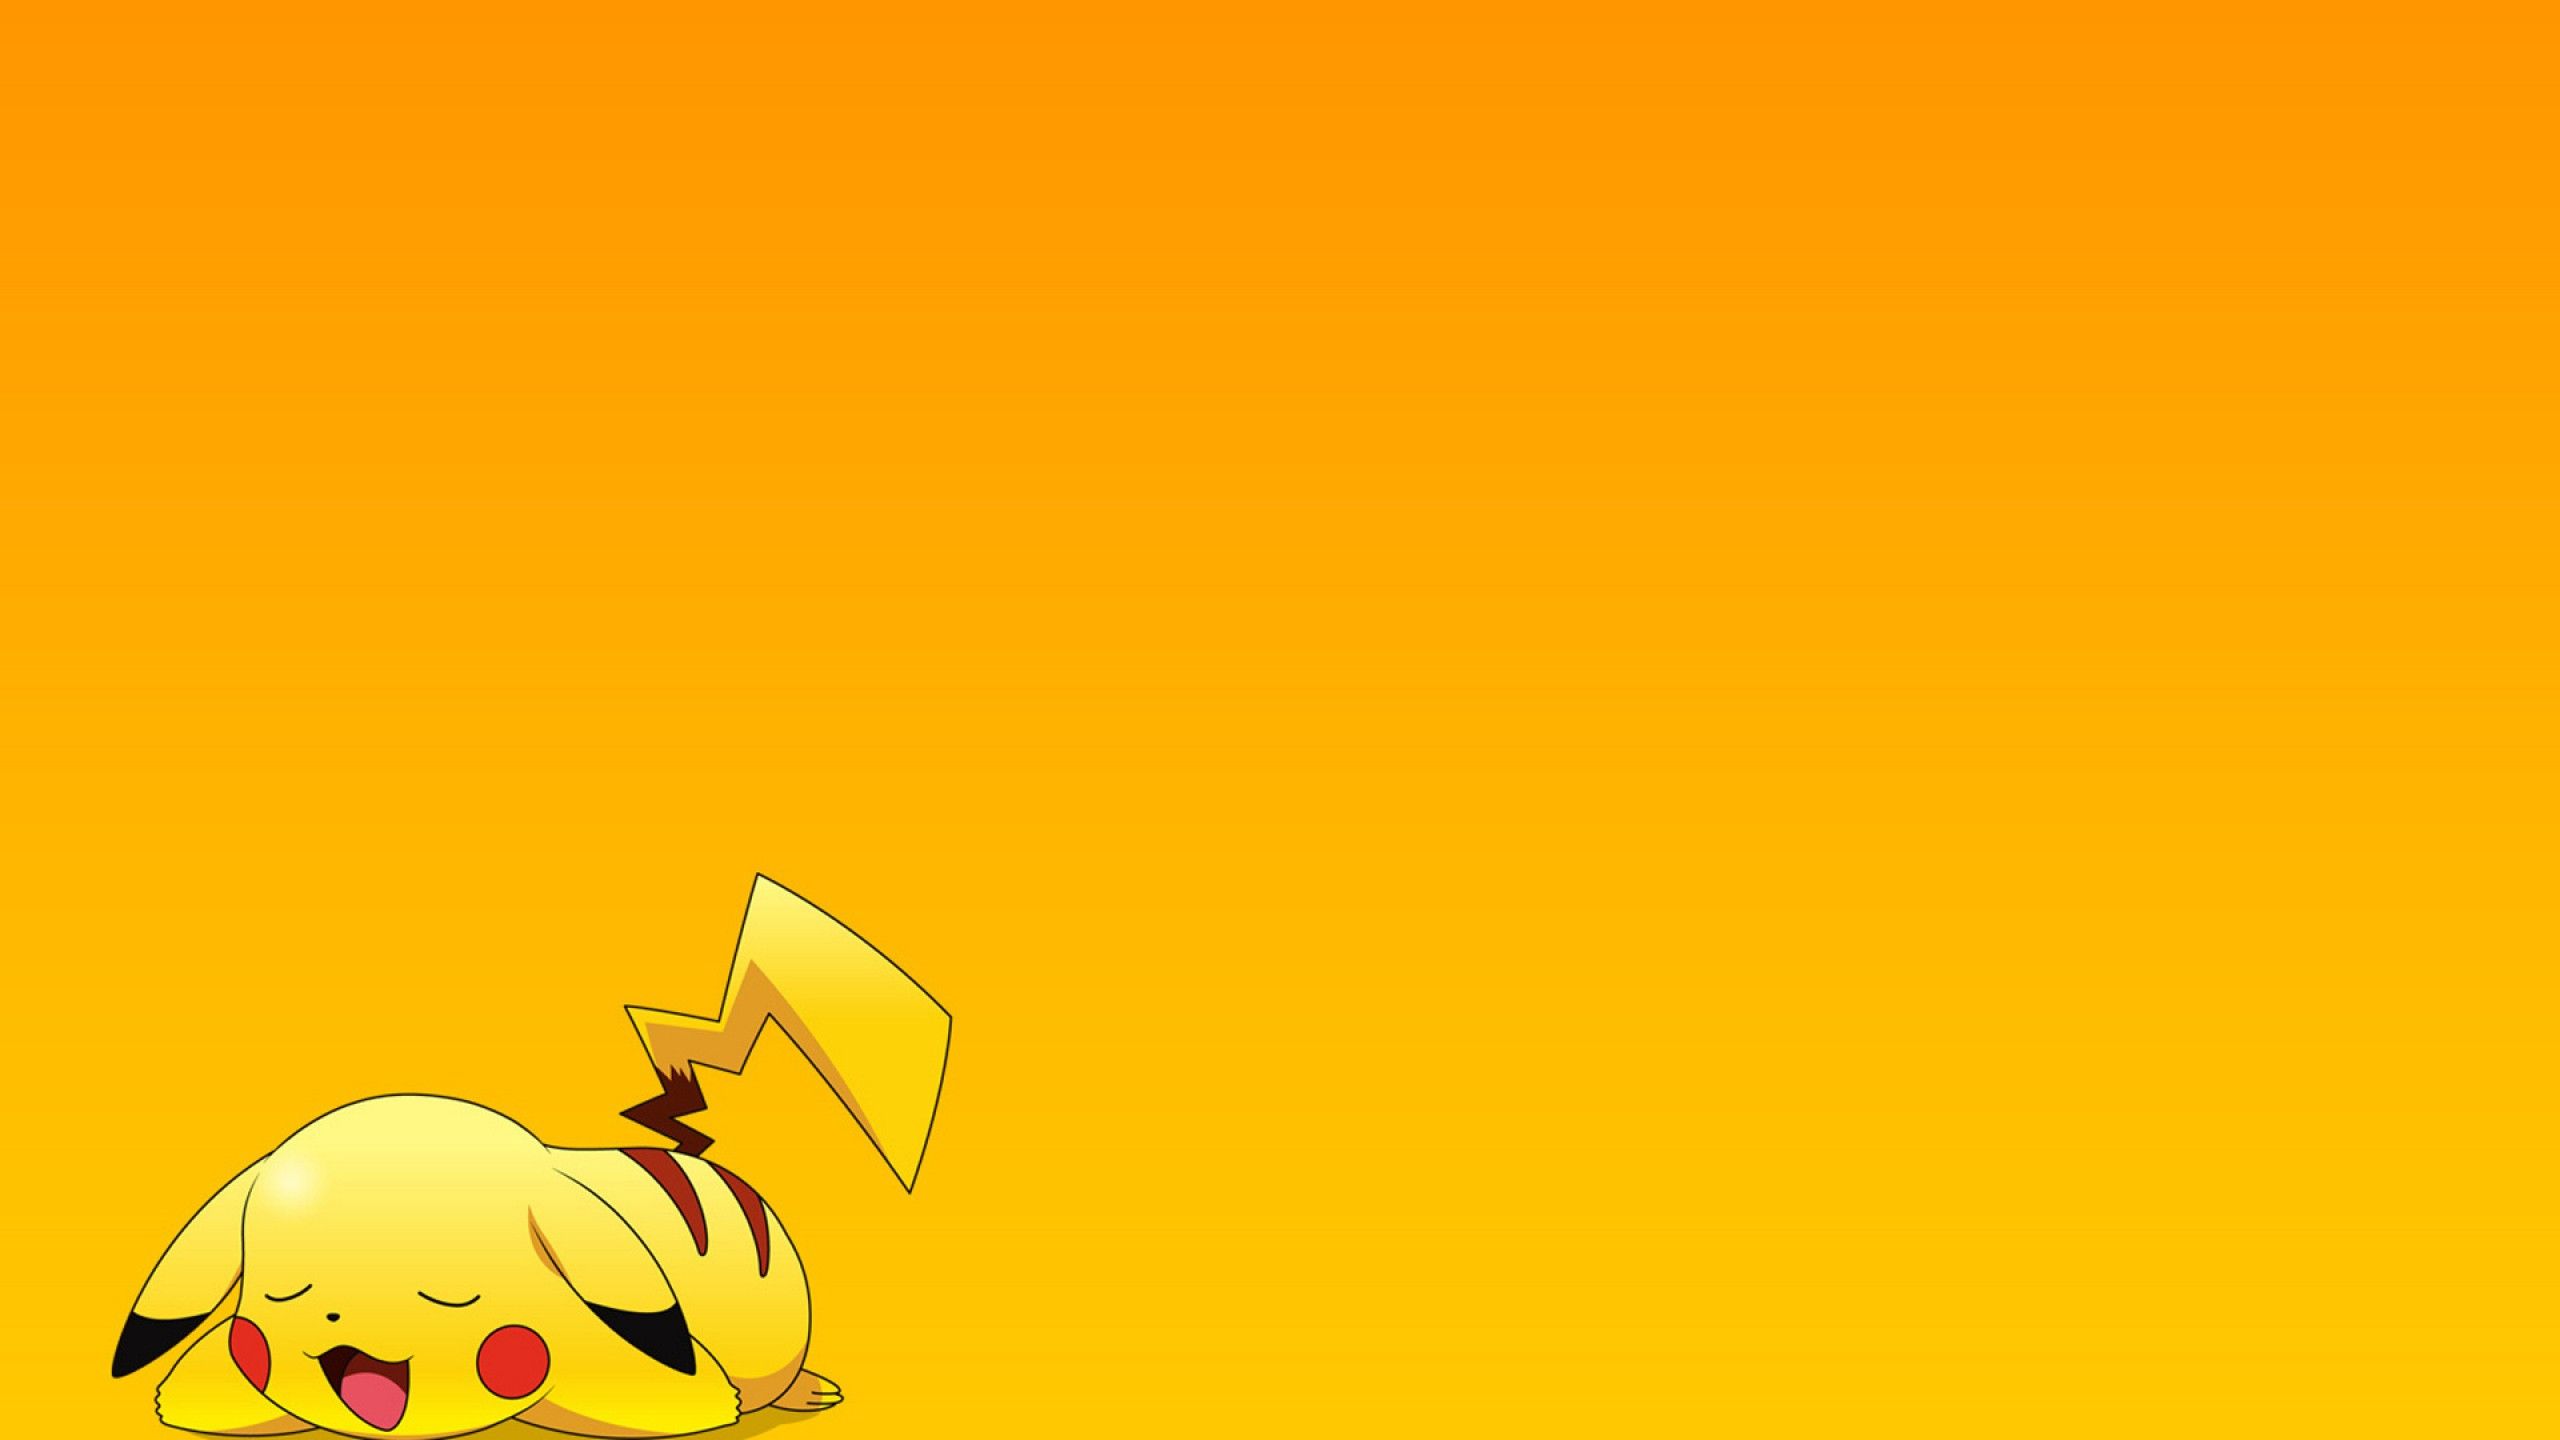 Pikachu 2560x1440 - Wallpaper - Wallpaper Style